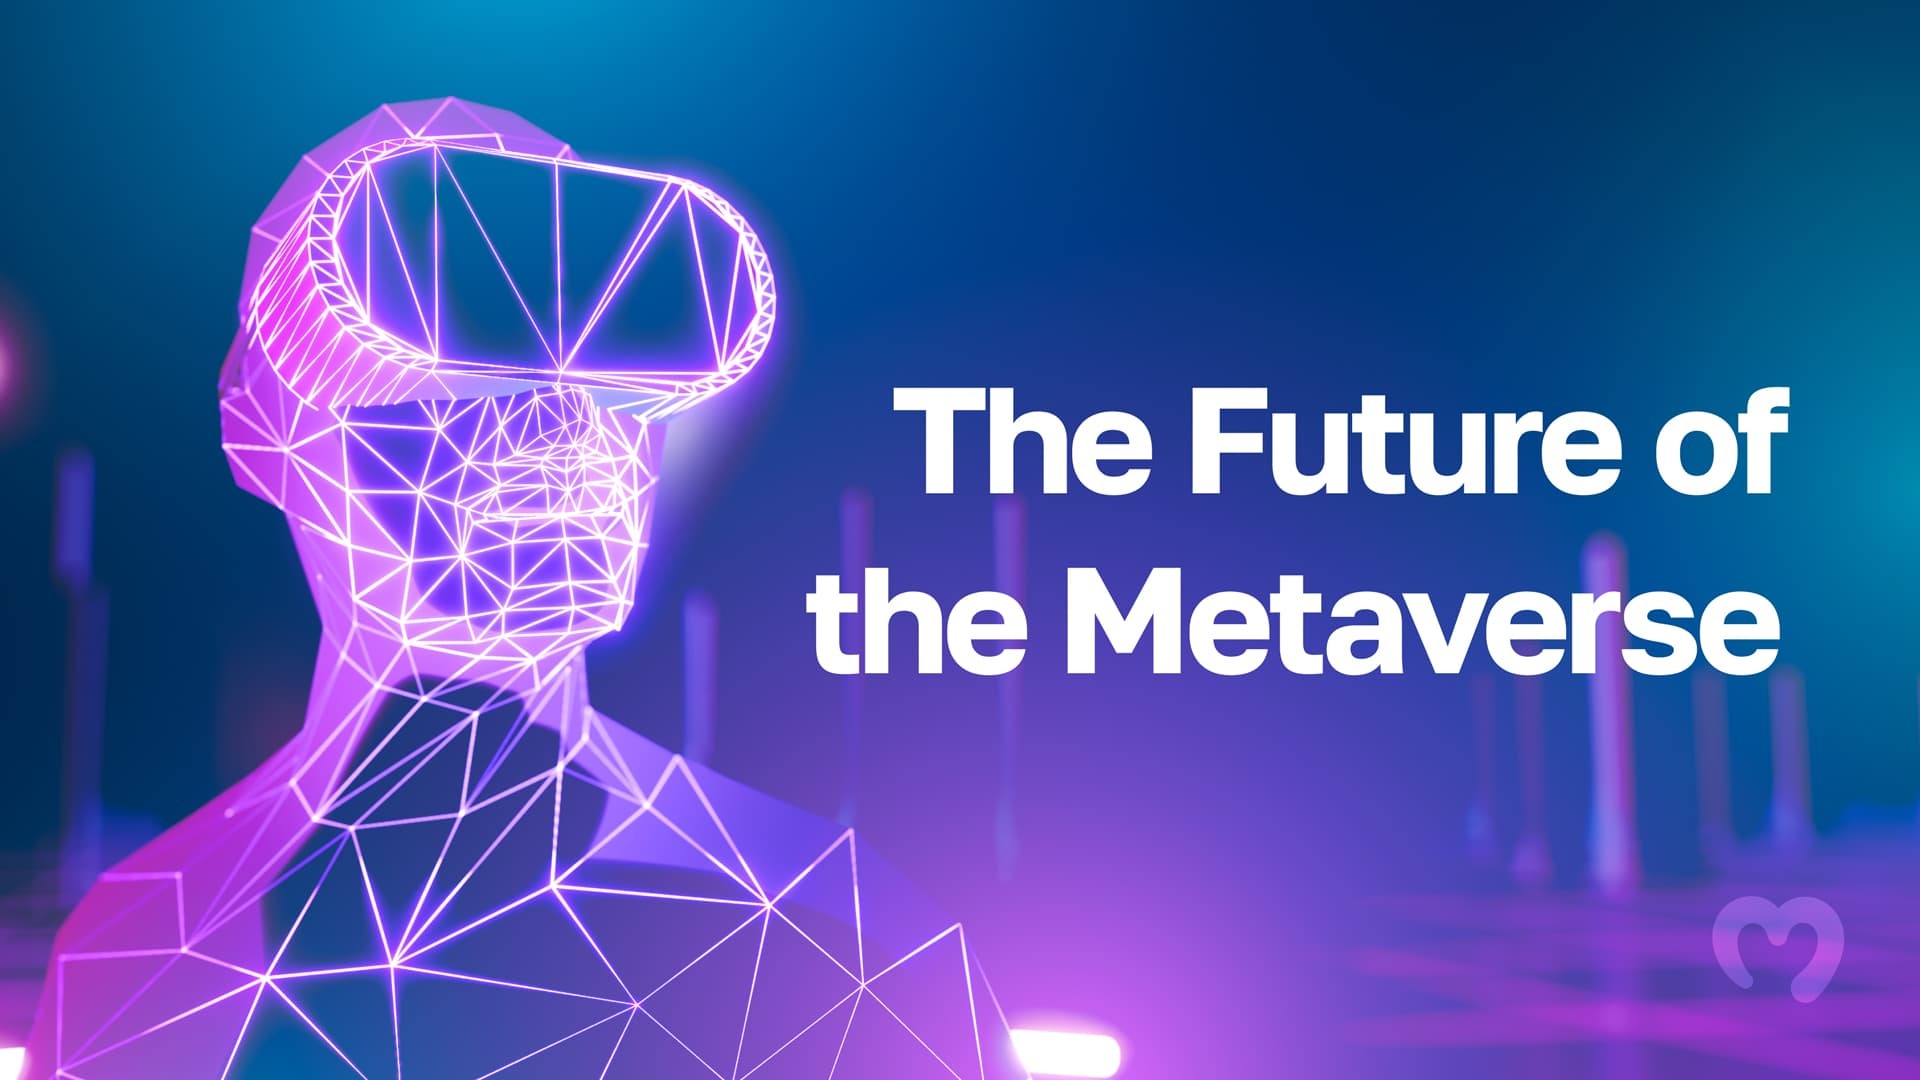 图片展示了一个线框构造的虚拟人物头像，背景是紫蓝色调，旁边有“Metaverse未来”字样。